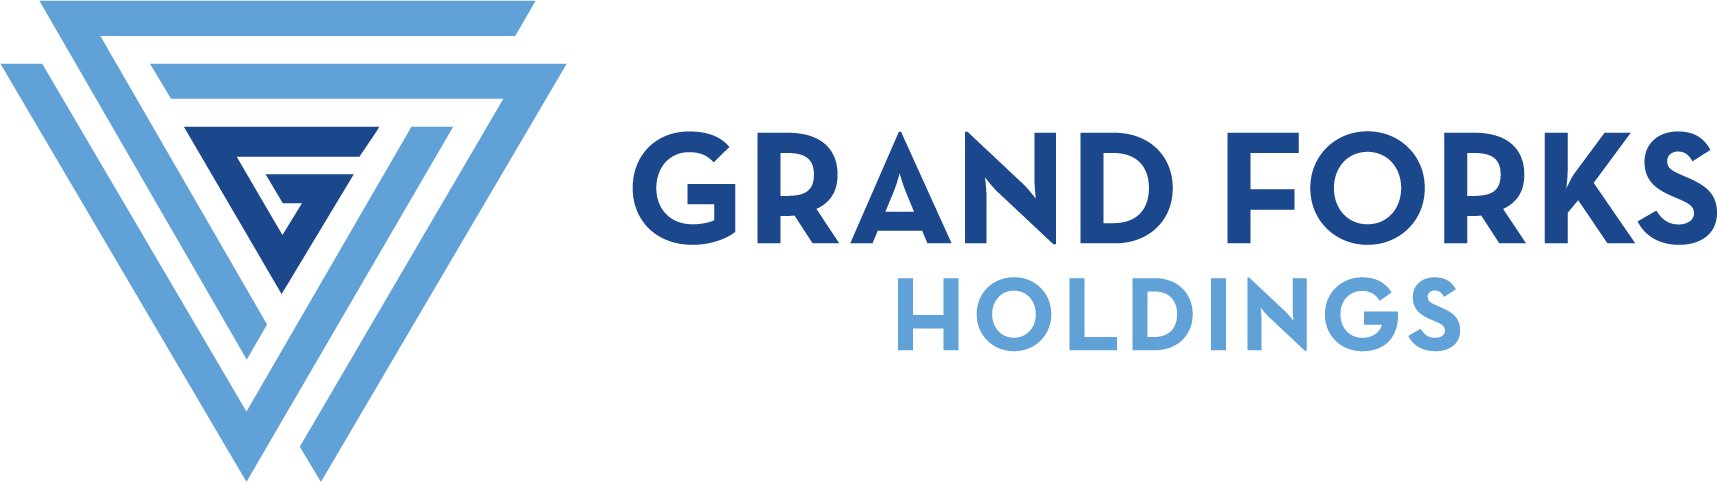 Grand Forks Holdings